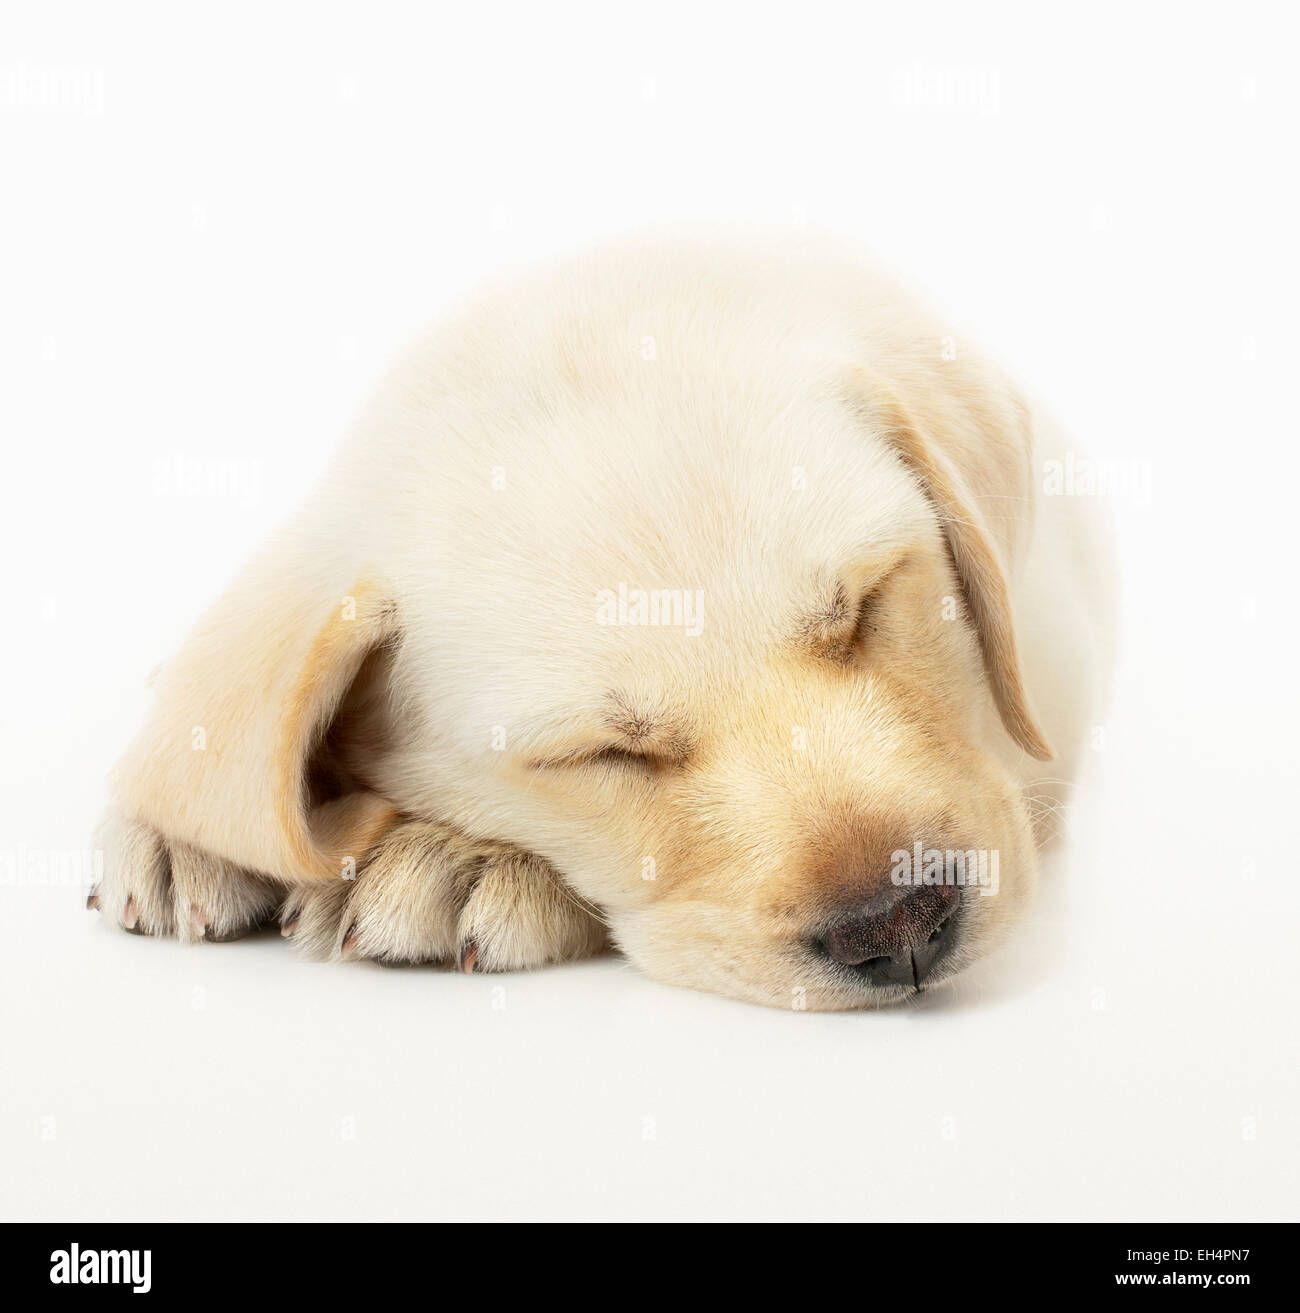 Sleeping Labrador Retriever Puppy on white studio background Stock Photo